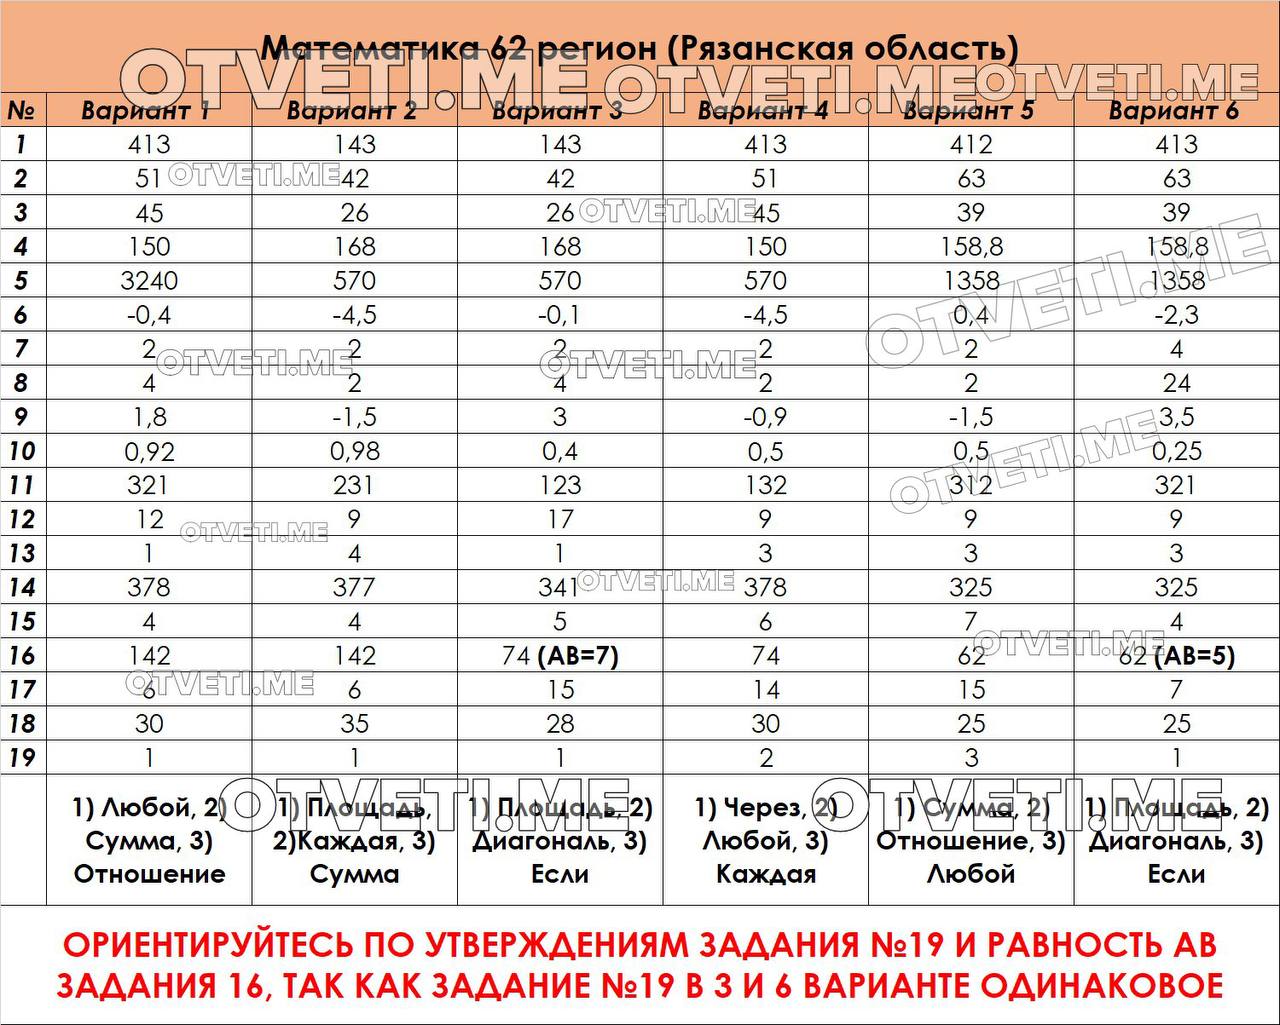 Русский язык огэ ответы телеграмм фото 44